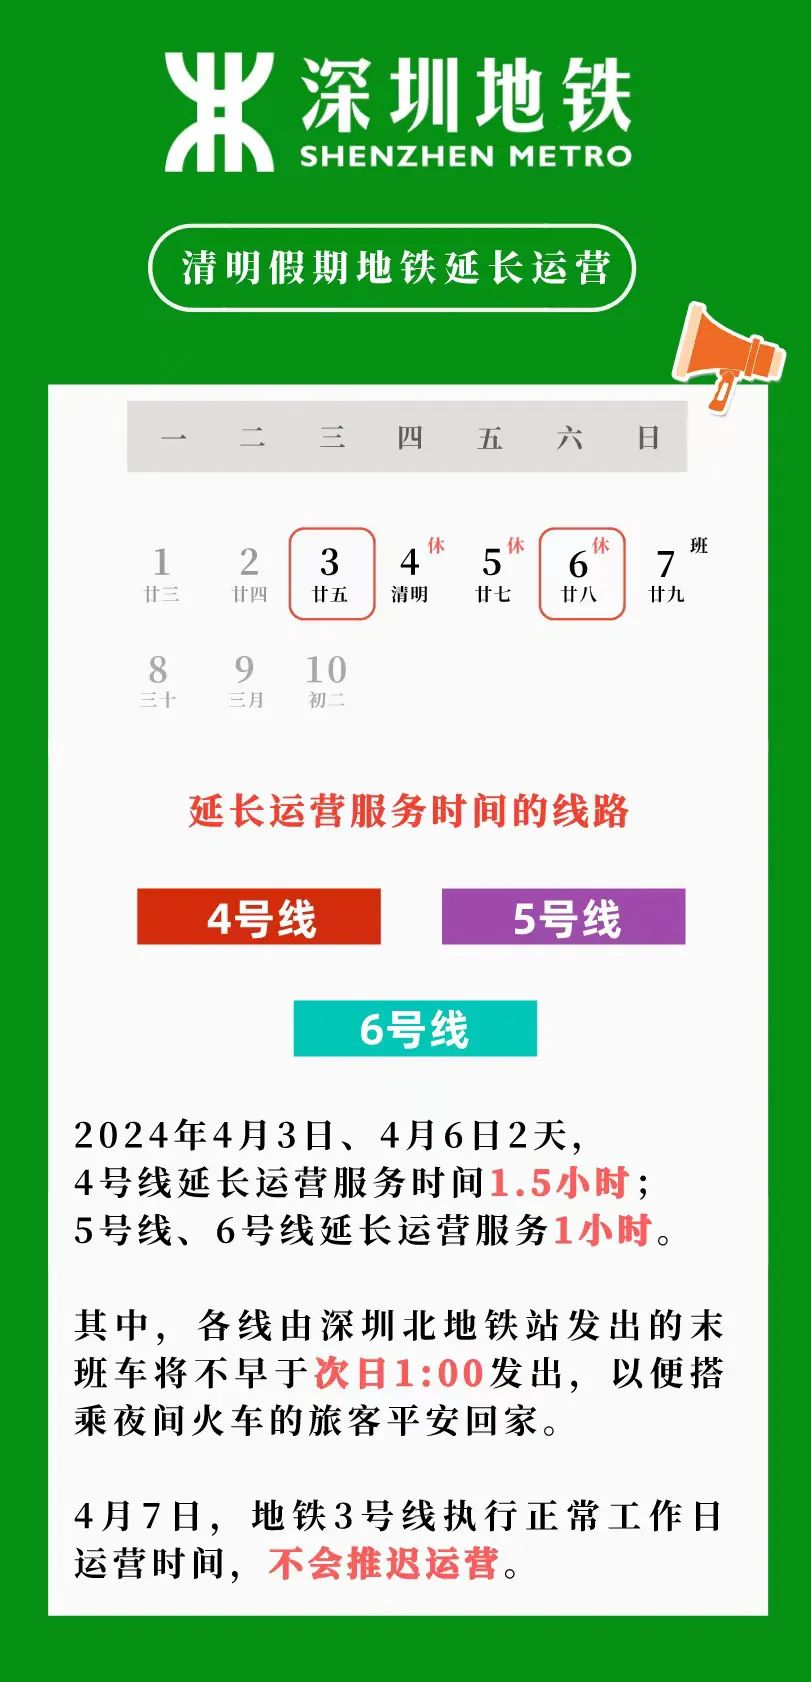 明日起深圳地铁运营时间有调整